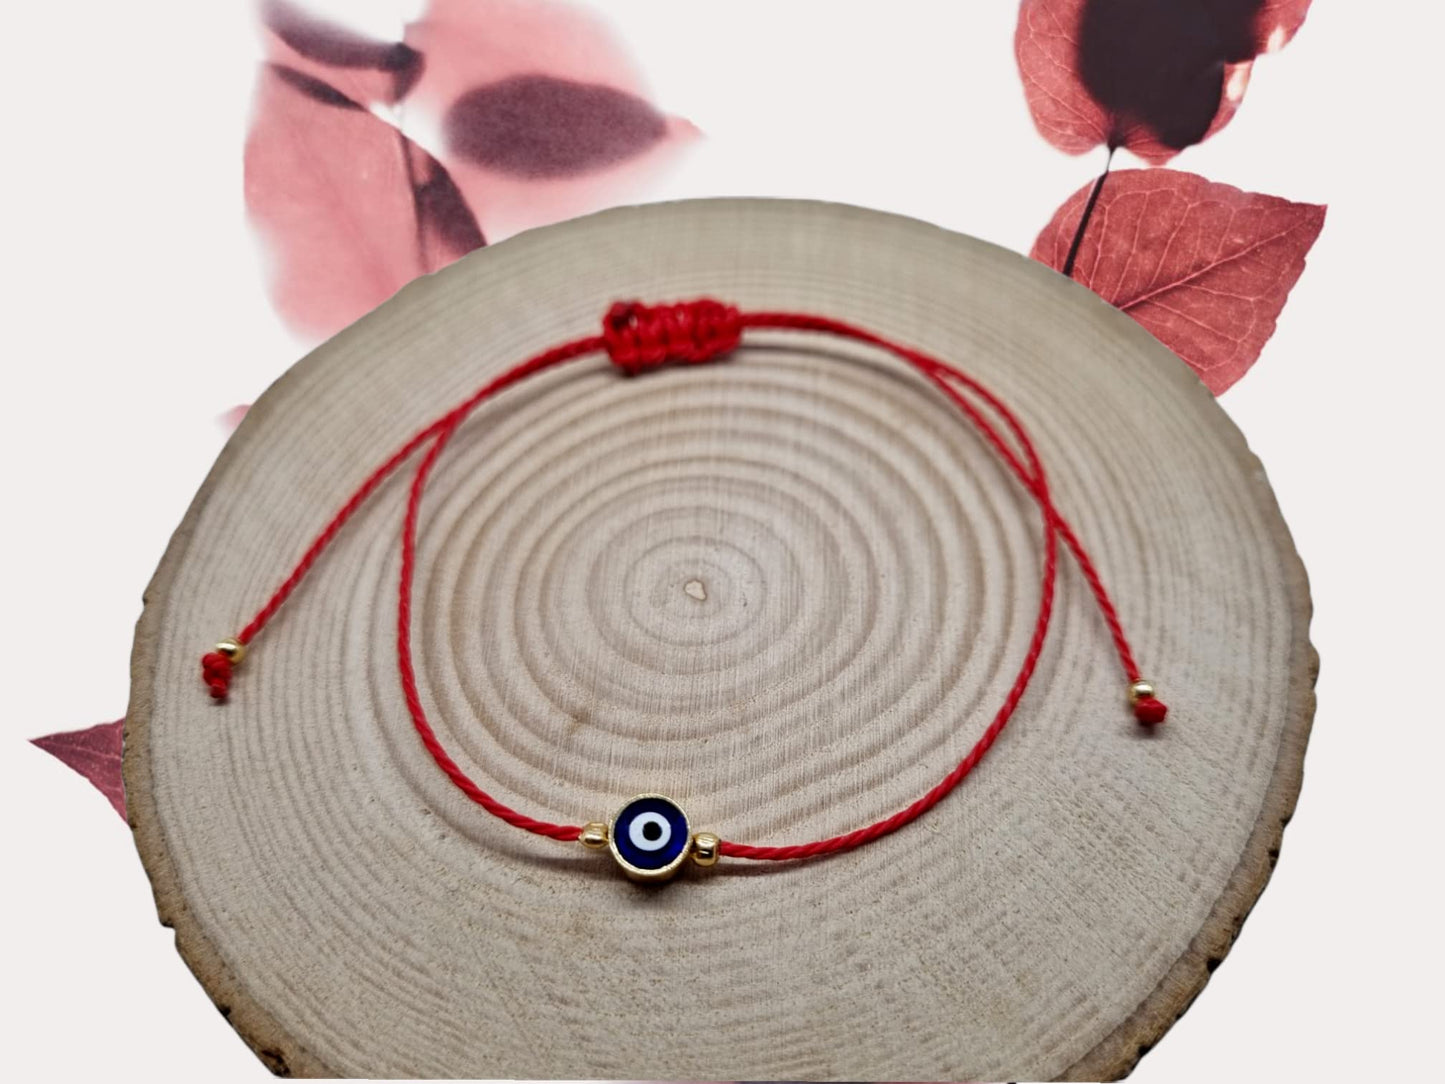 MYSTIC JEWELS par Dalia - Bracelet en fil rouge - Oeil turc bleu tournant pour la bonne chance (rouge)